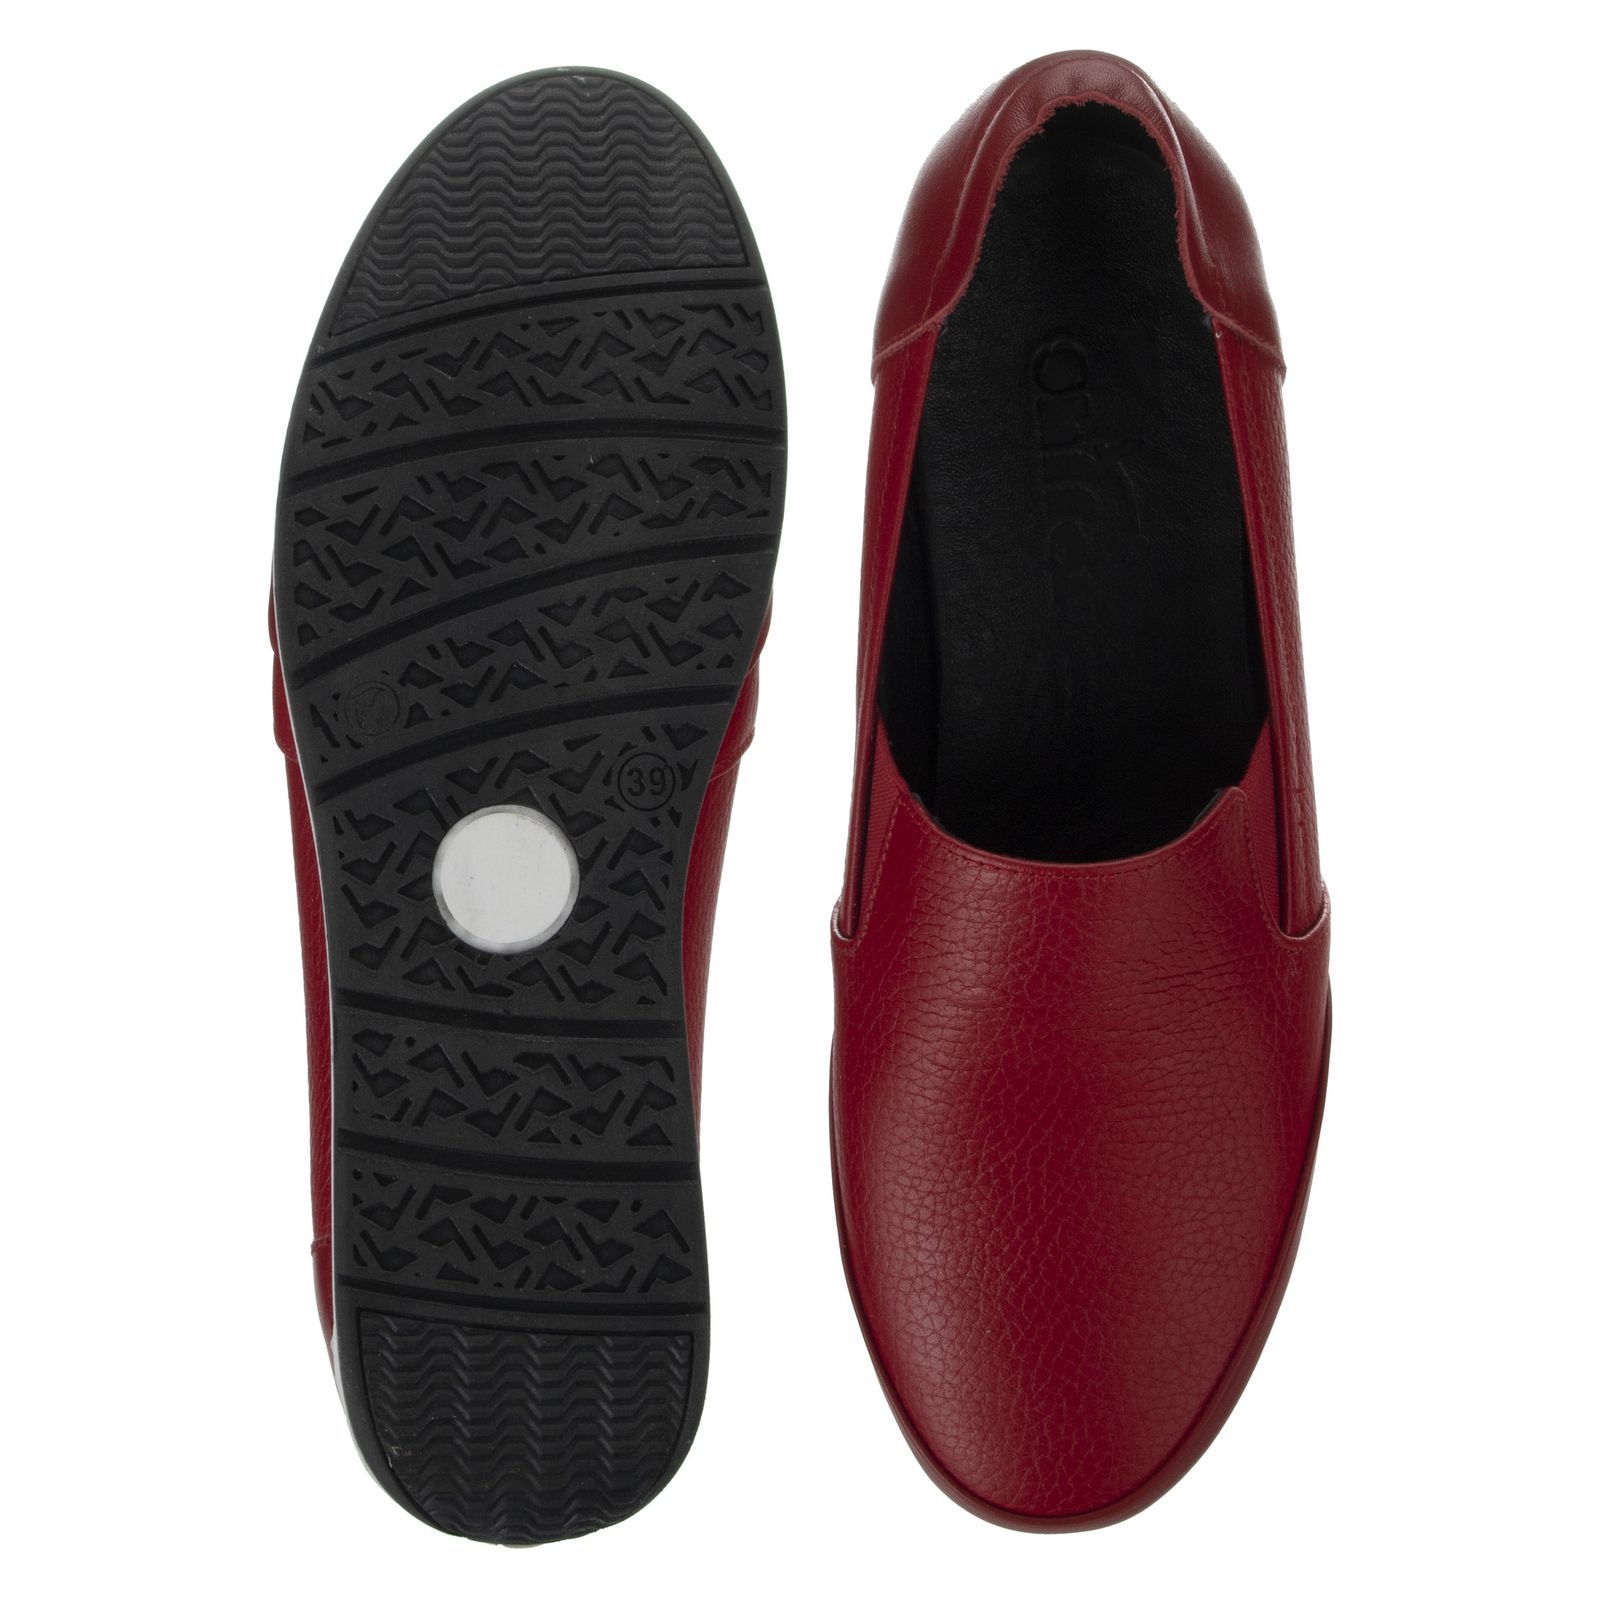 کفش روزمره زنانه شیفر مدل 5275A-102 - قرمز - 6